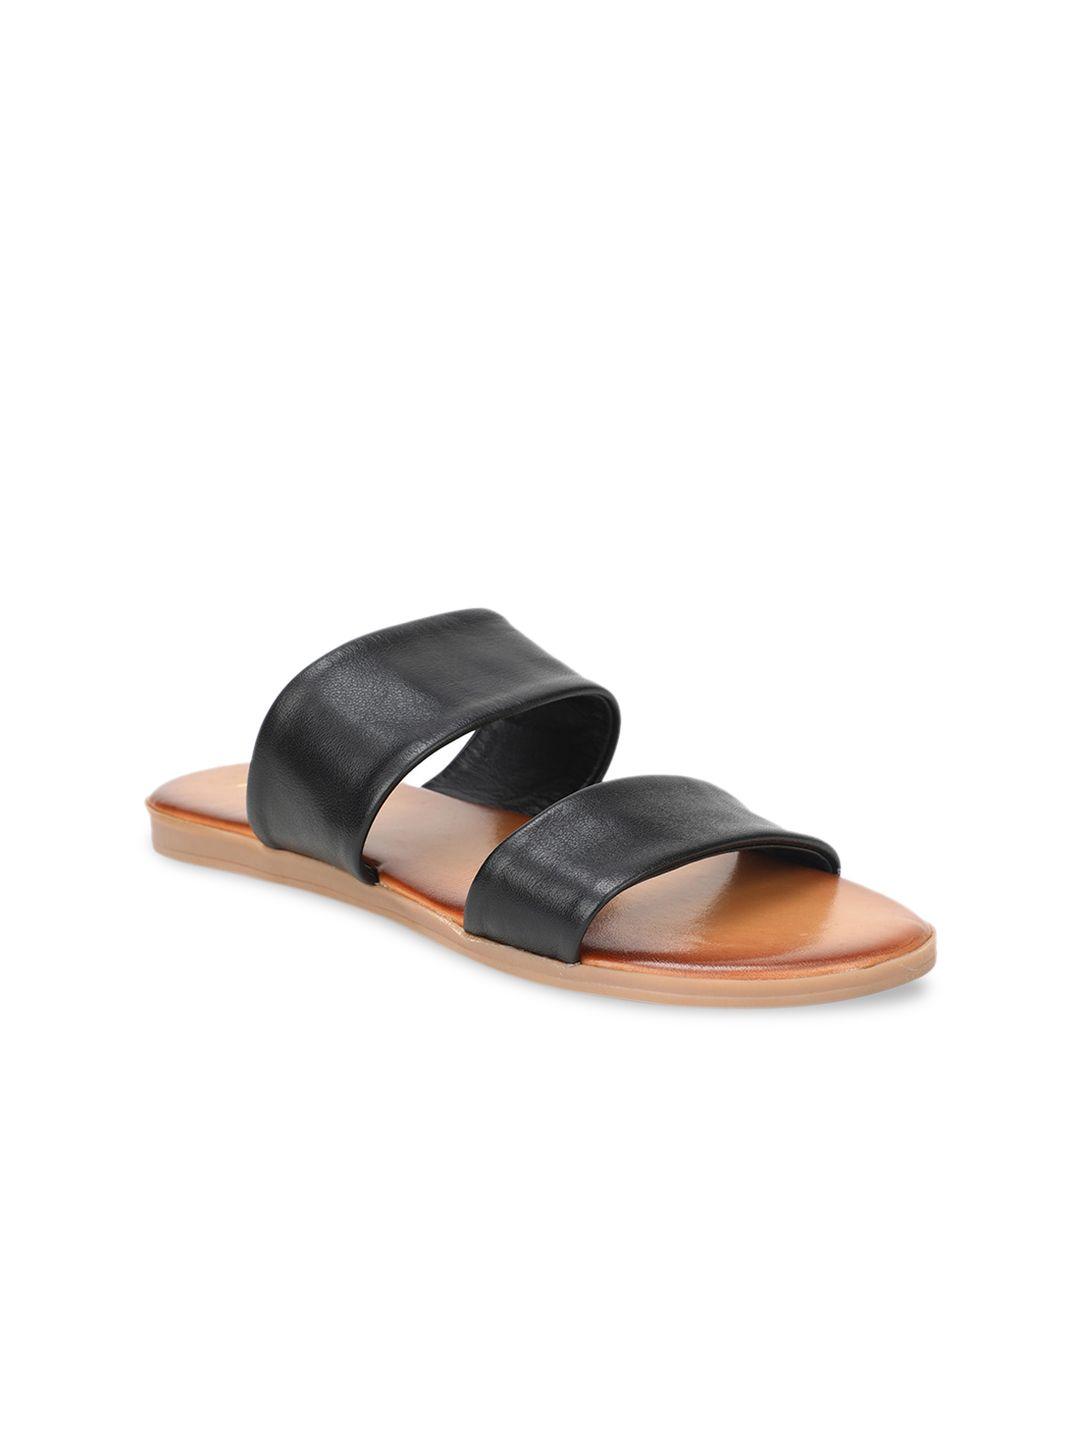 aldo women black solid leather open toe flats